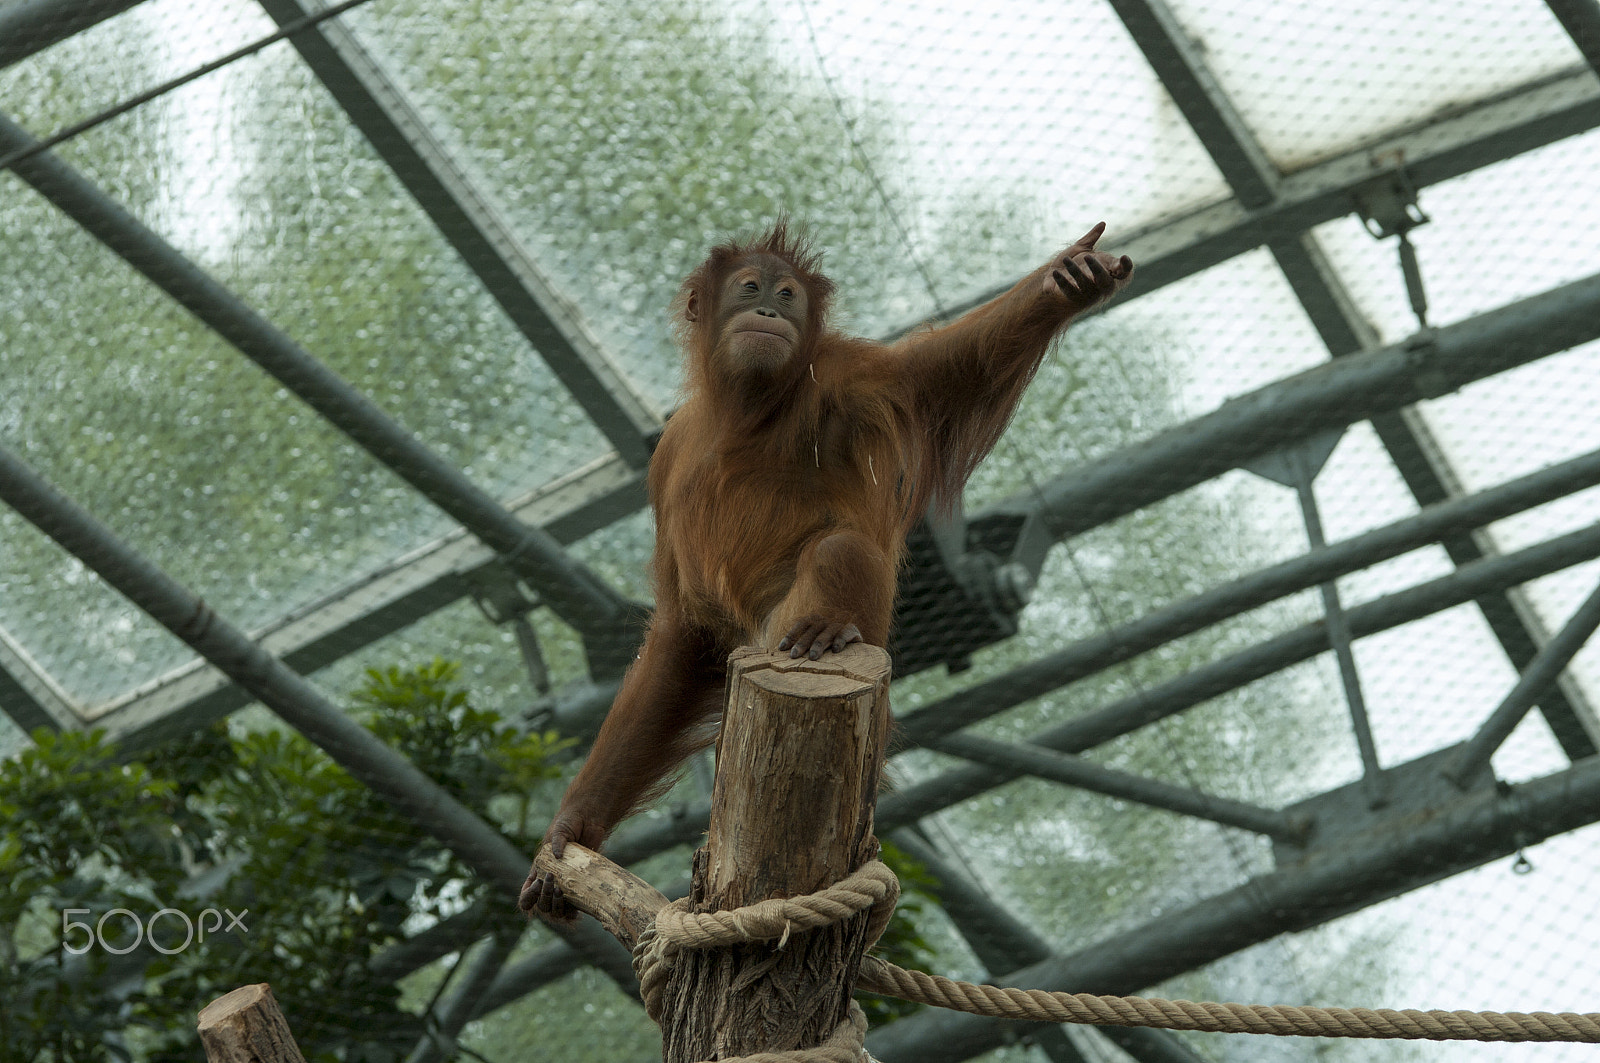 Pentax K20D + Tamron SP AF 70-200mm F2.8 Di LD (IF) MACRO sample photo. Orangutan photography